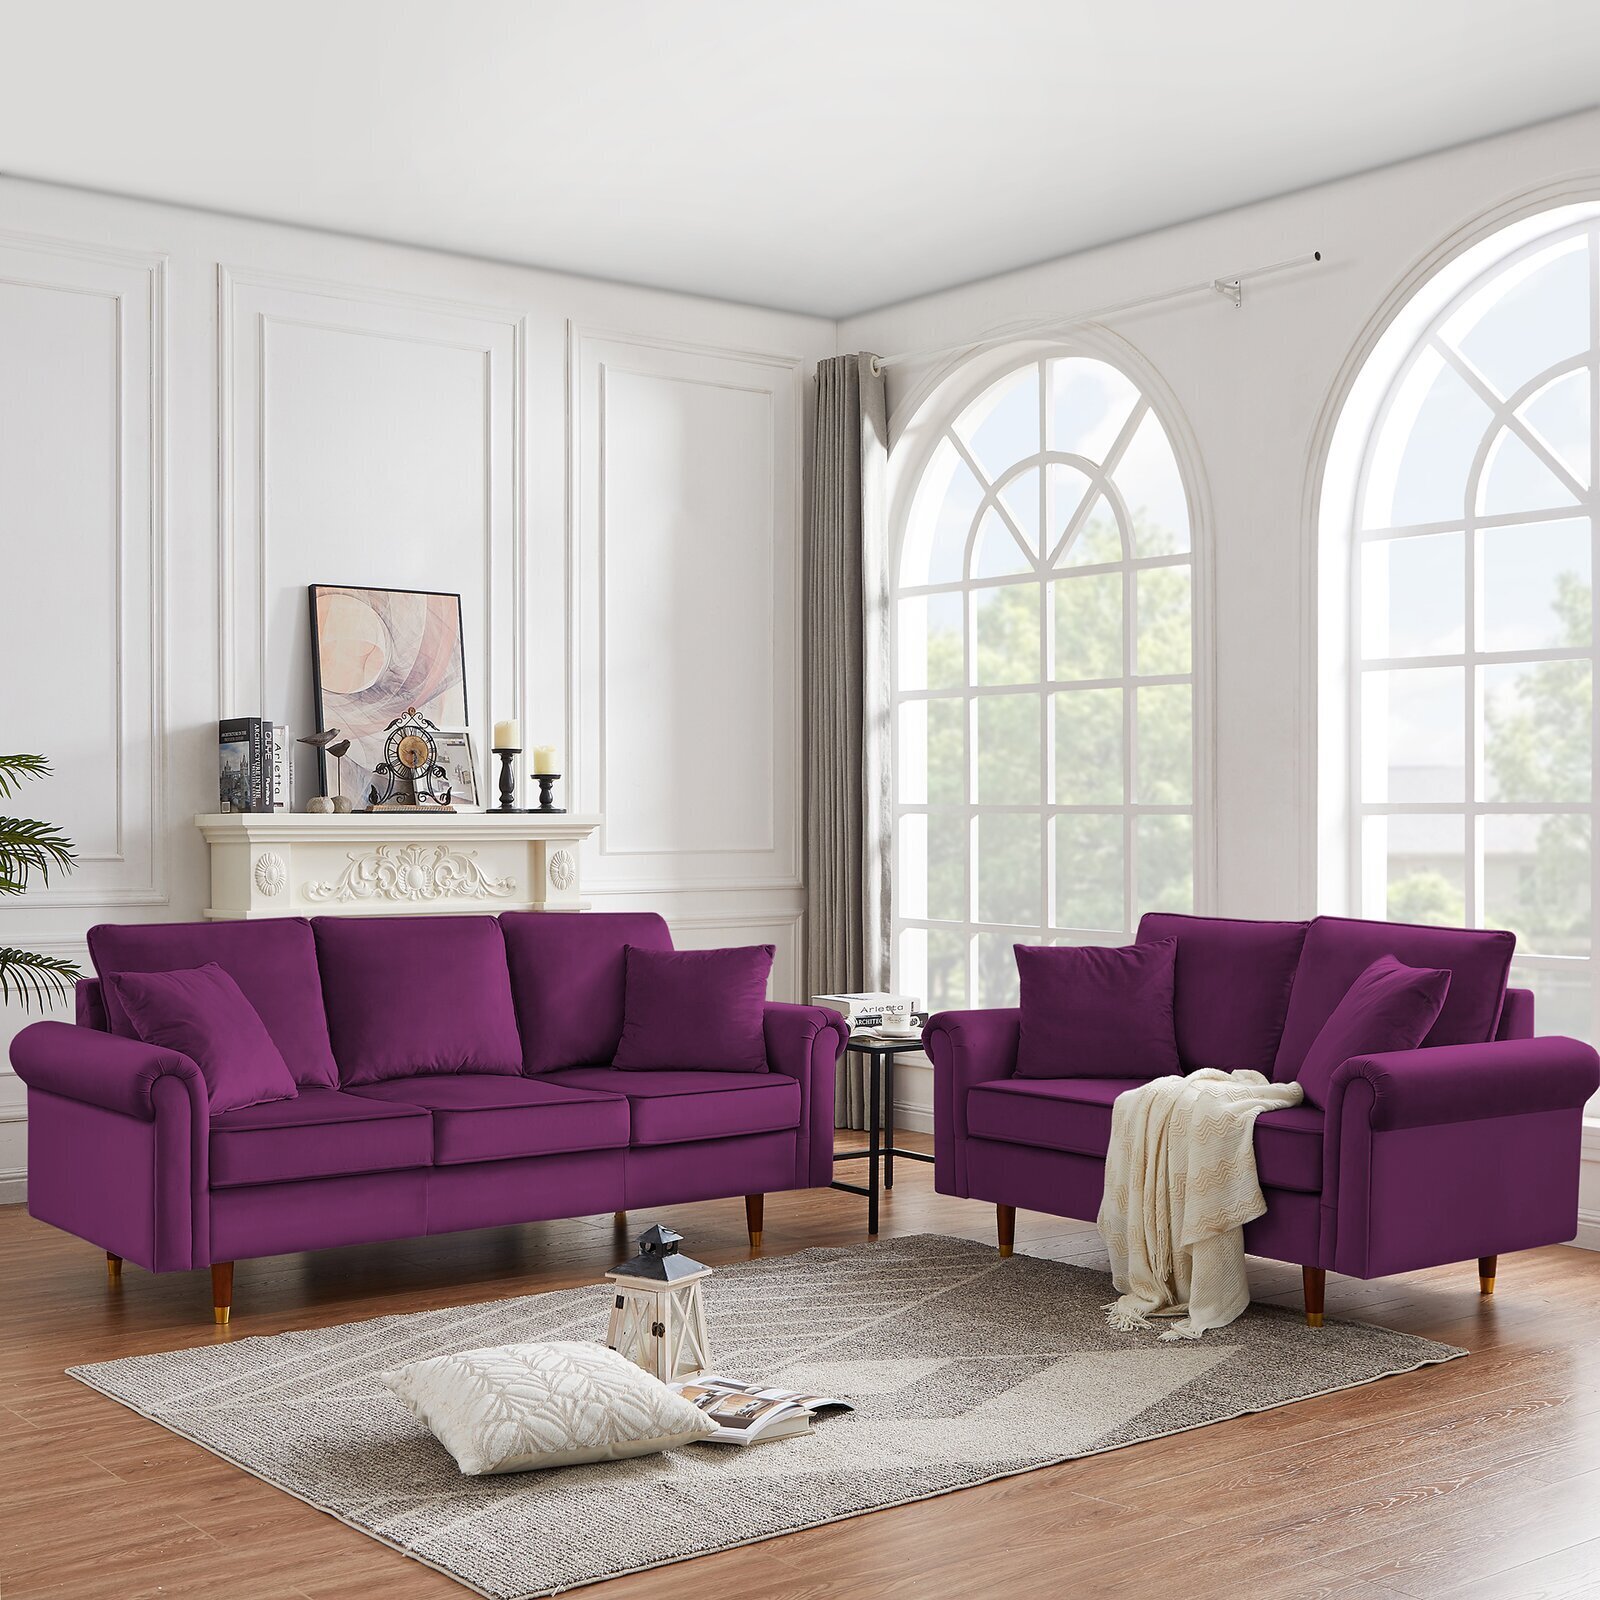 cijfer formaat slecht Purple Living Room Set - Ideas on Foter